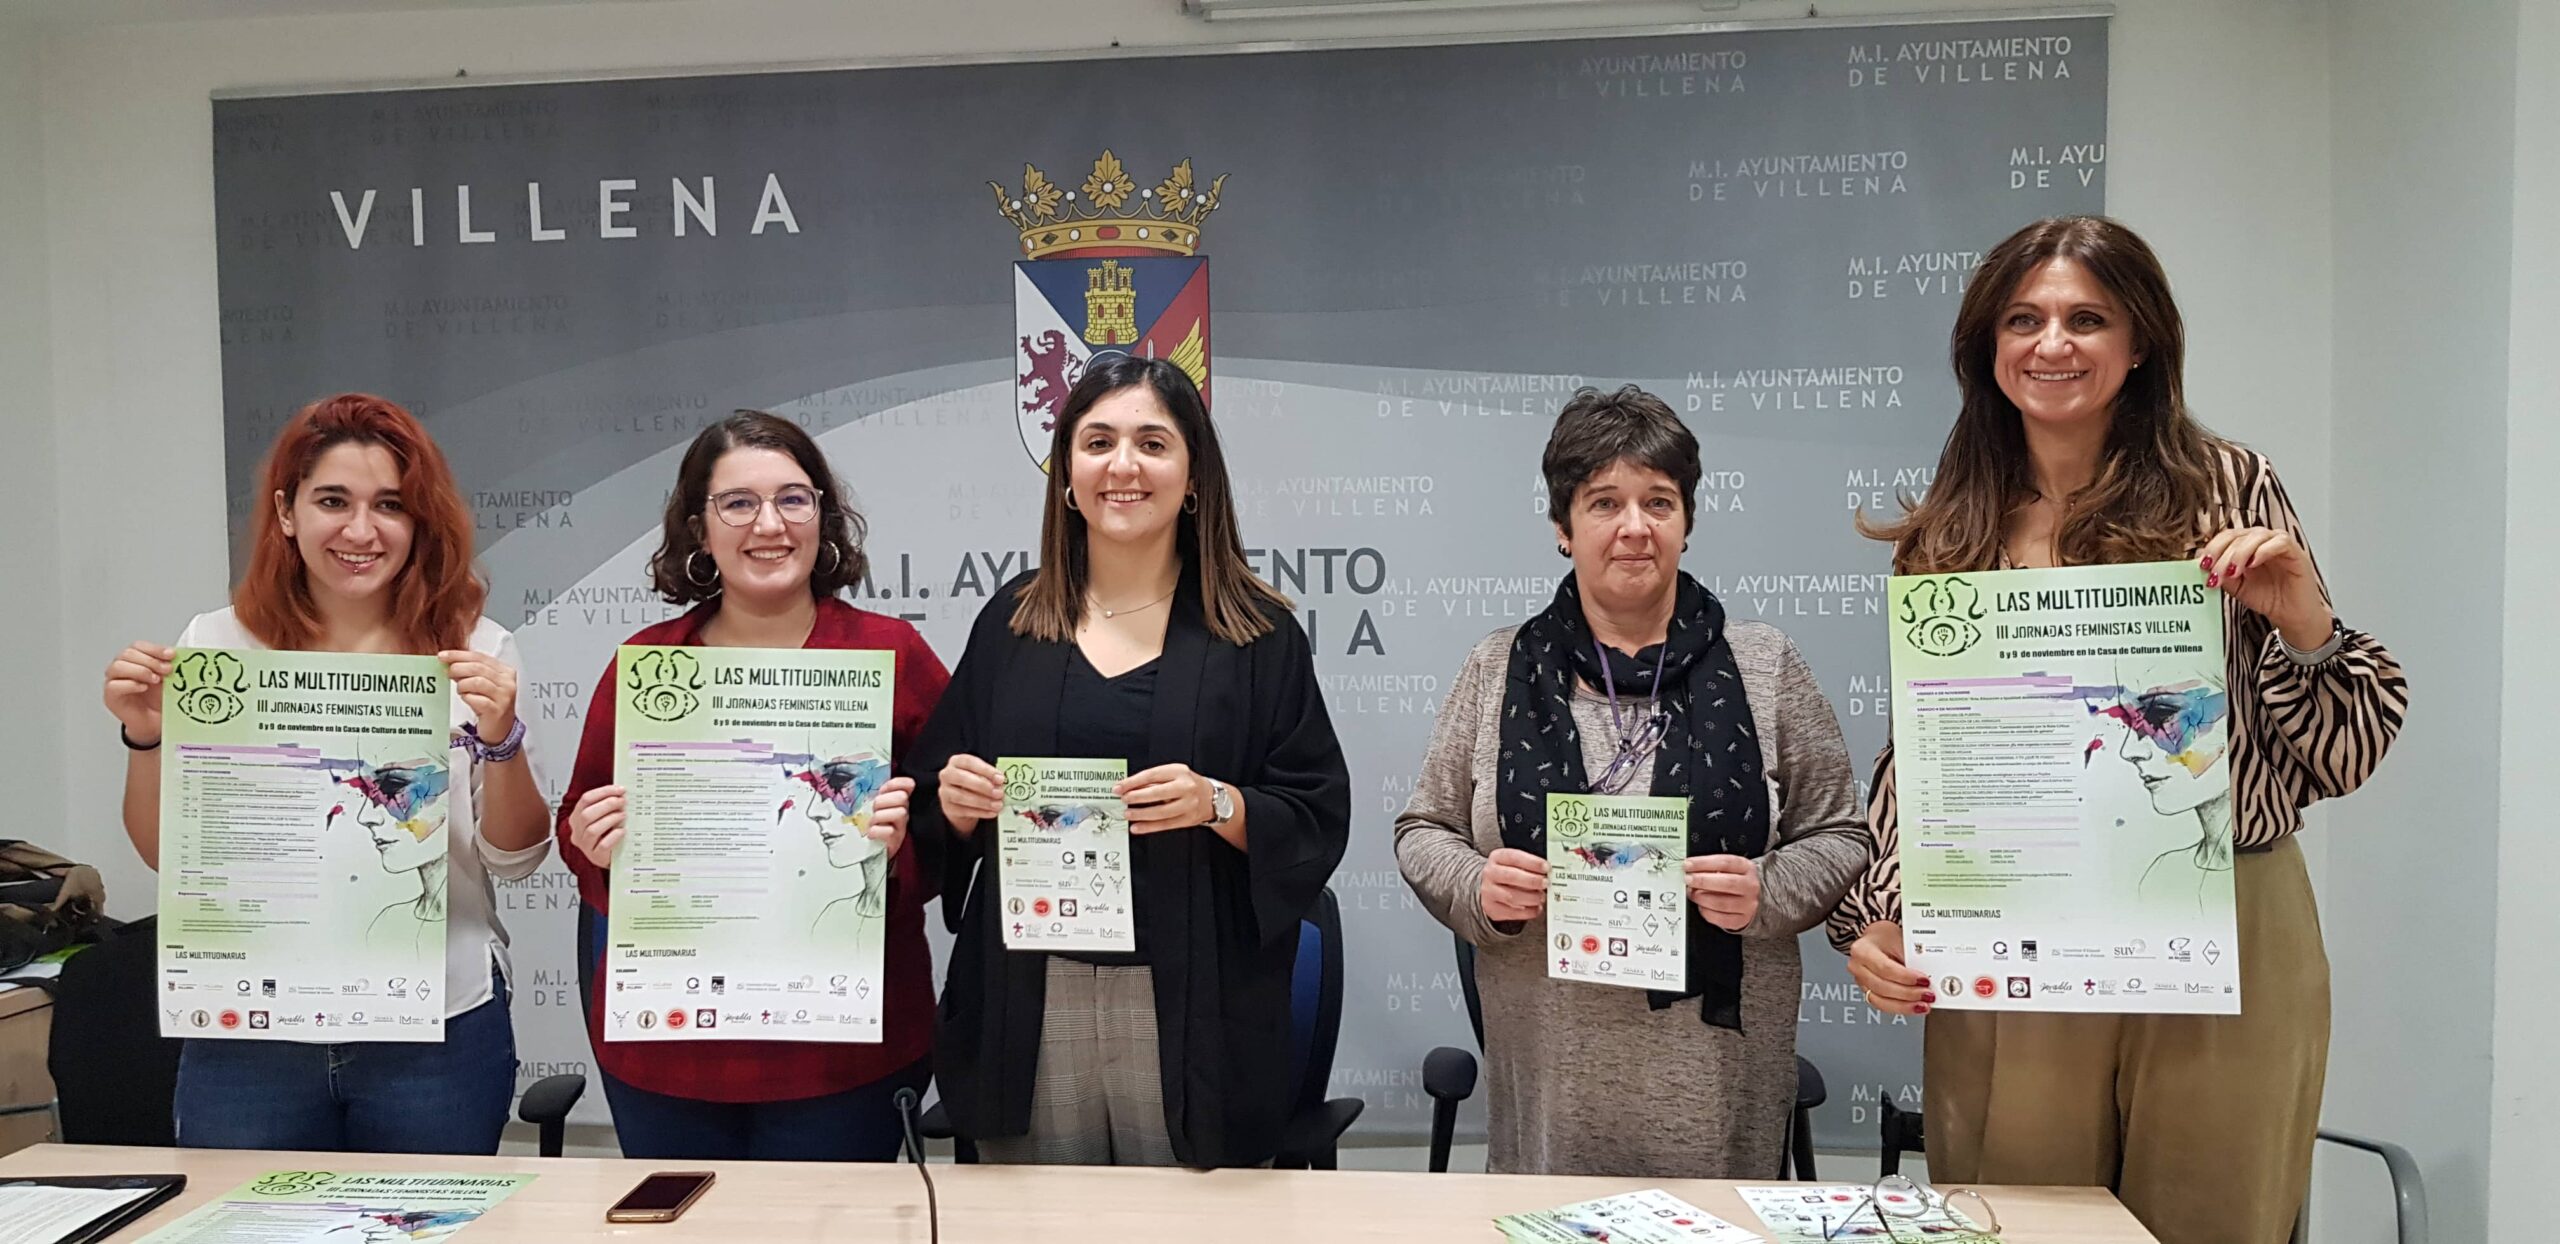 Organizan las III Jornadas feministas “Las multitudinarias” en Villena